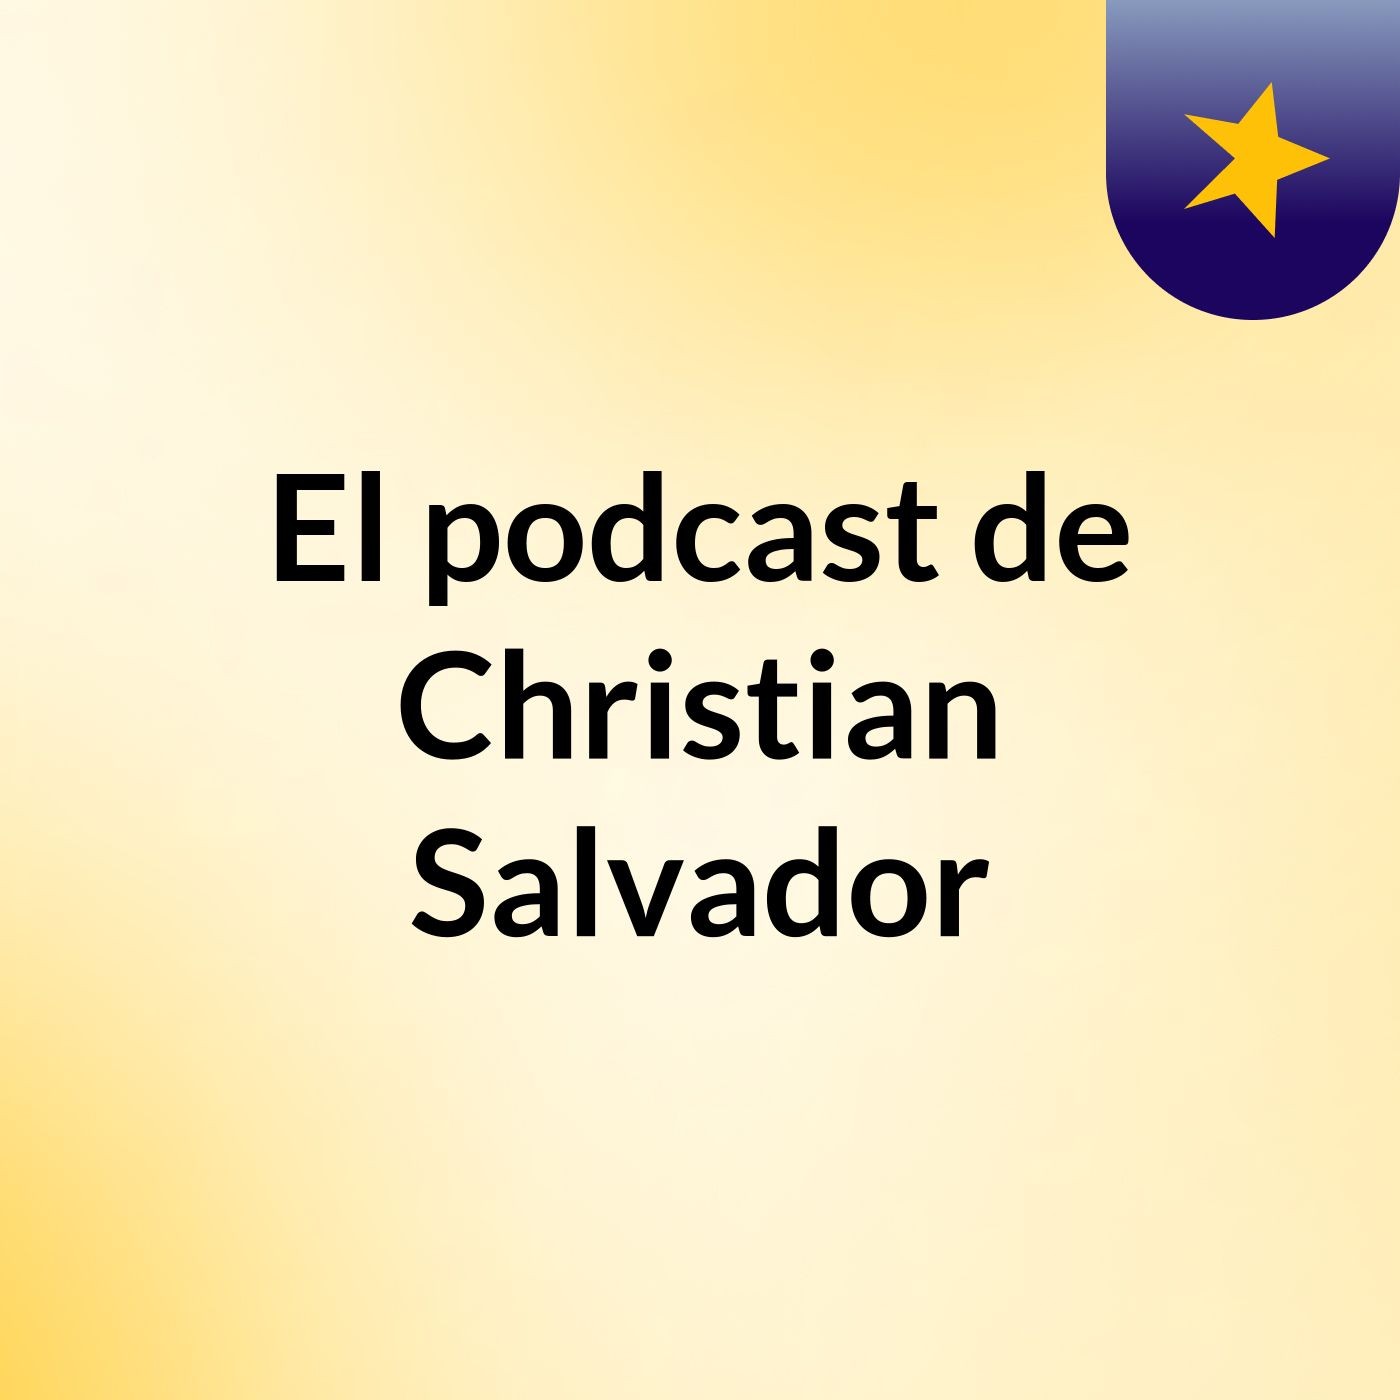 El podcast de Christian Salvador